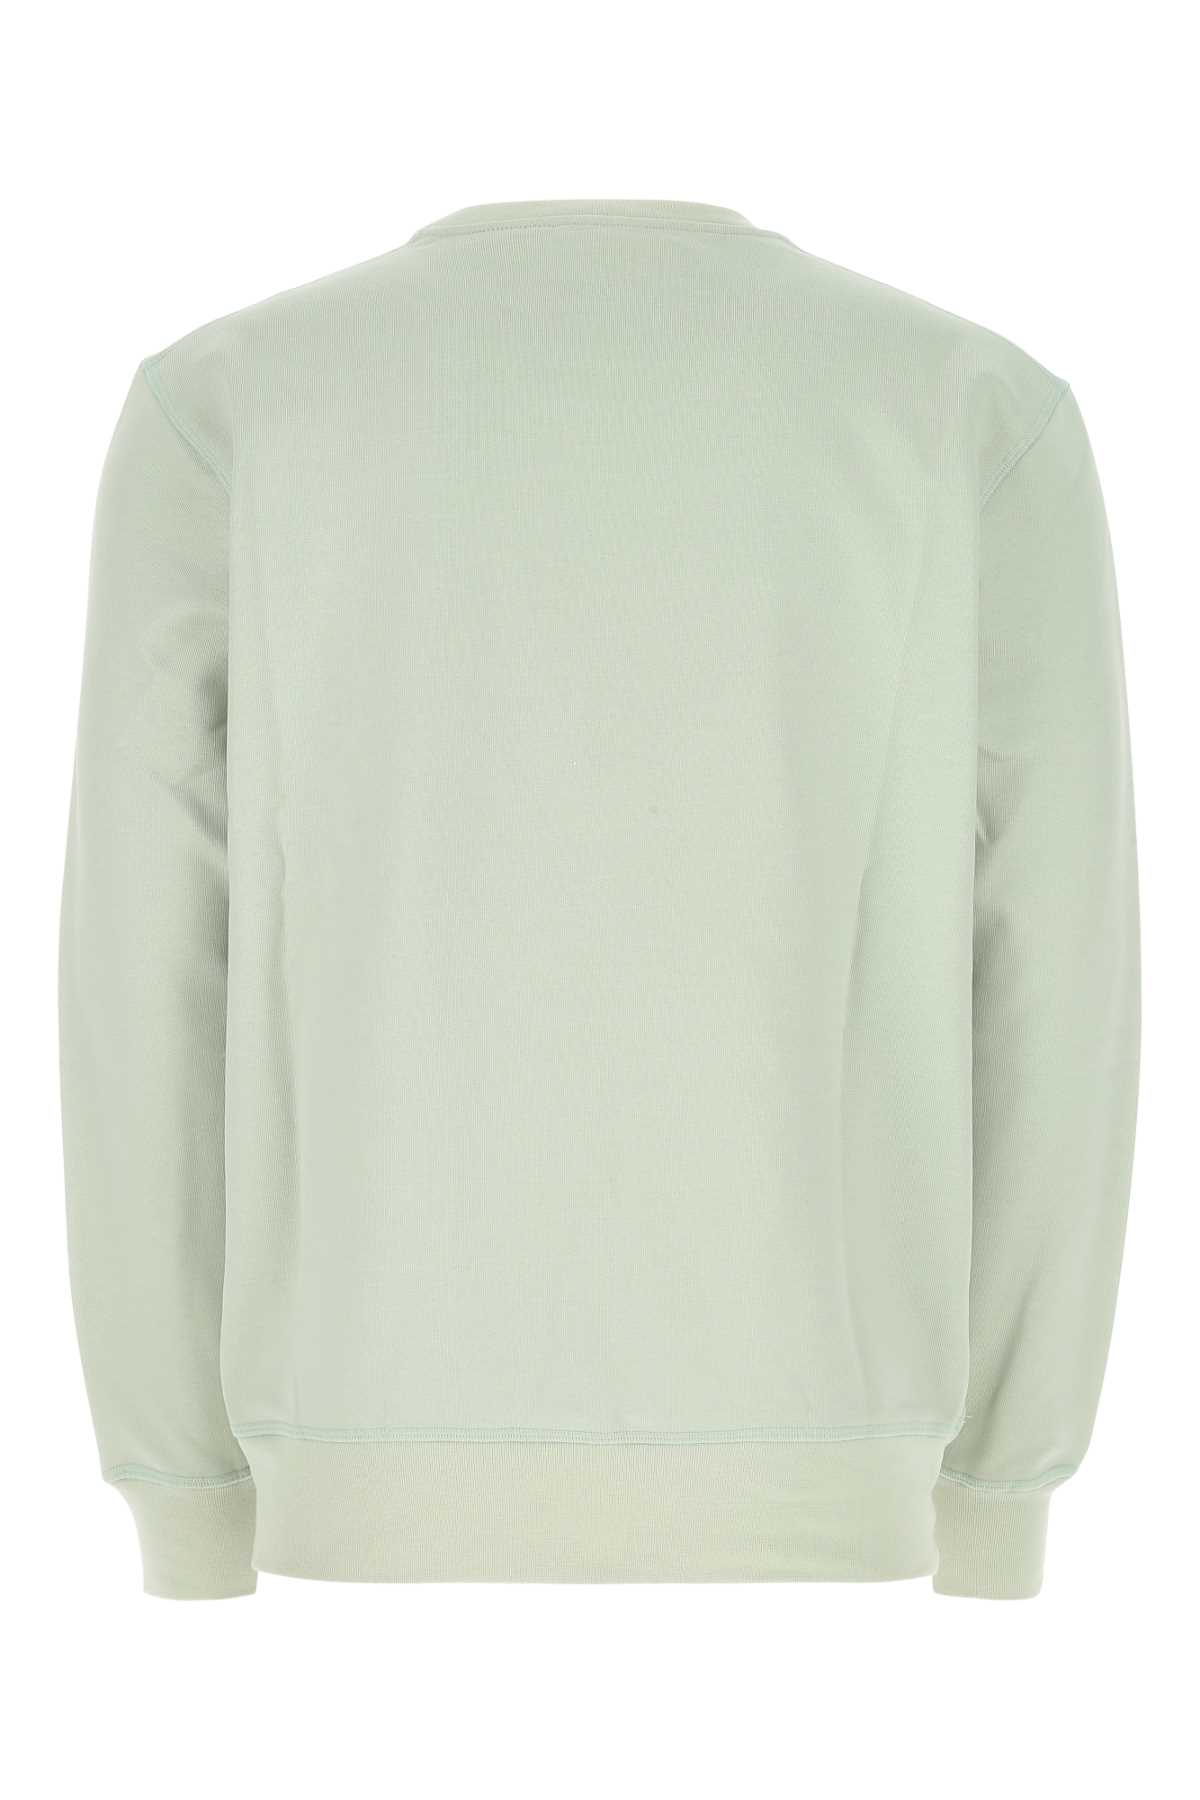 Alexander Mcqueen Pastel Green Cotton Sweatshirt In 4920